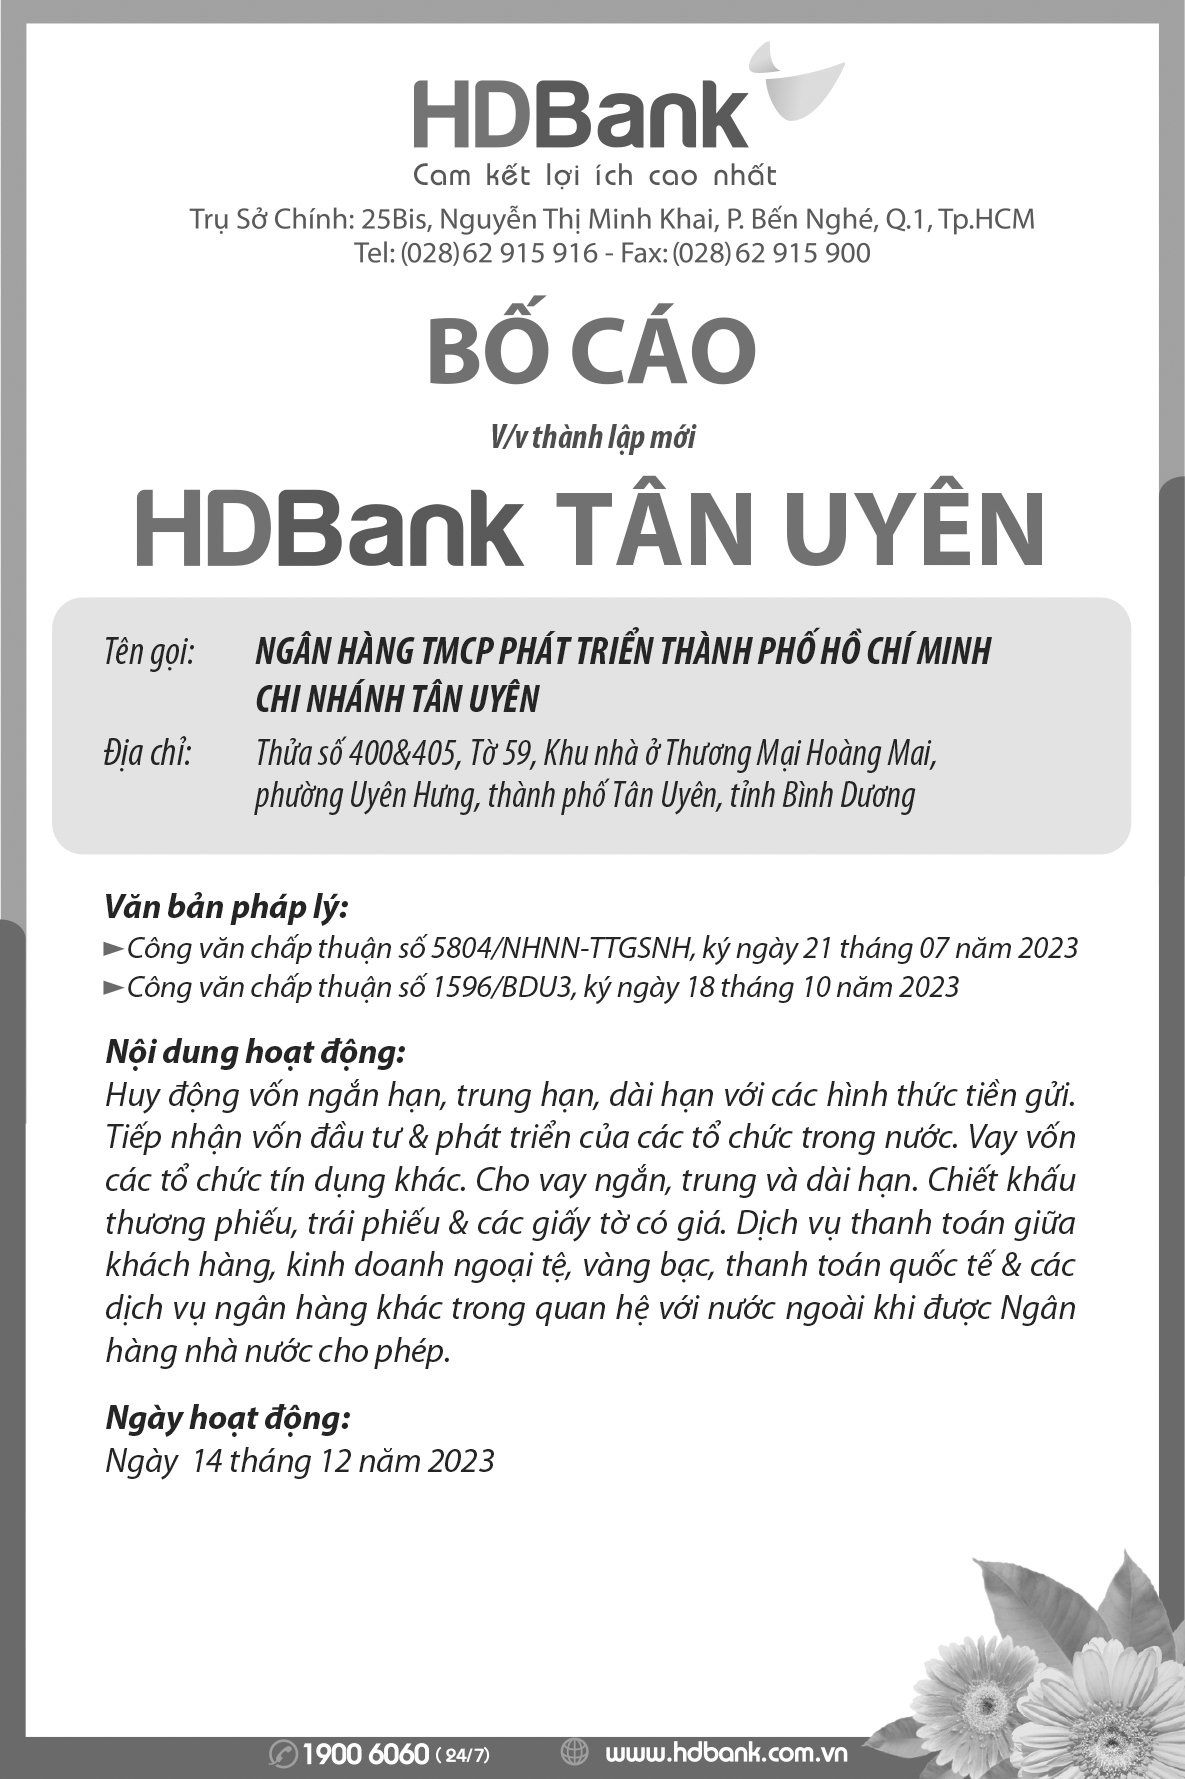 Bố cáo thành lập HDBank chi nhánh Tân Uyên